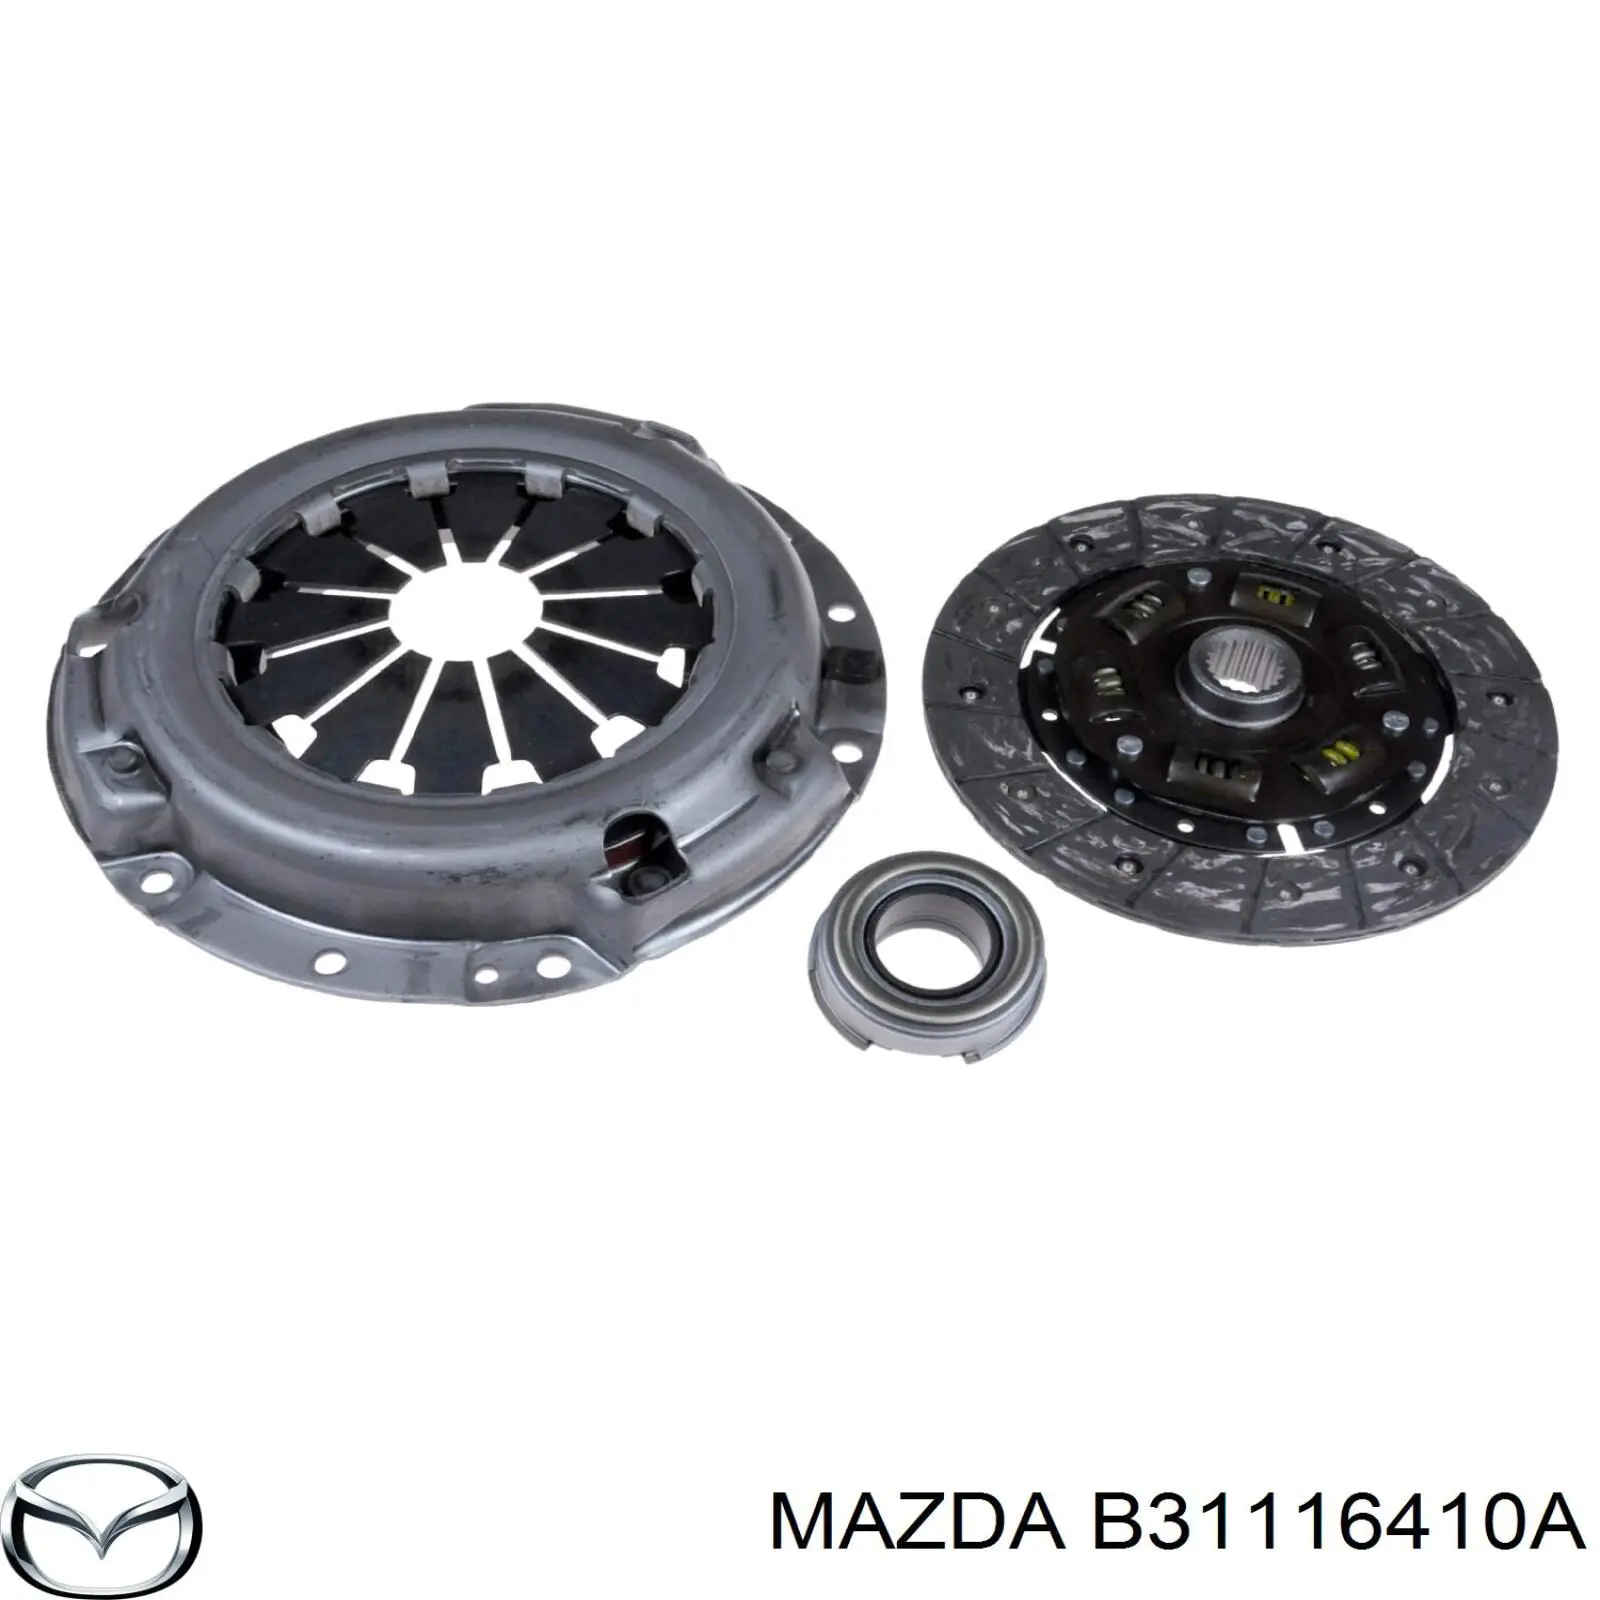 E301-16-410 Mazda plato de presión de embrague